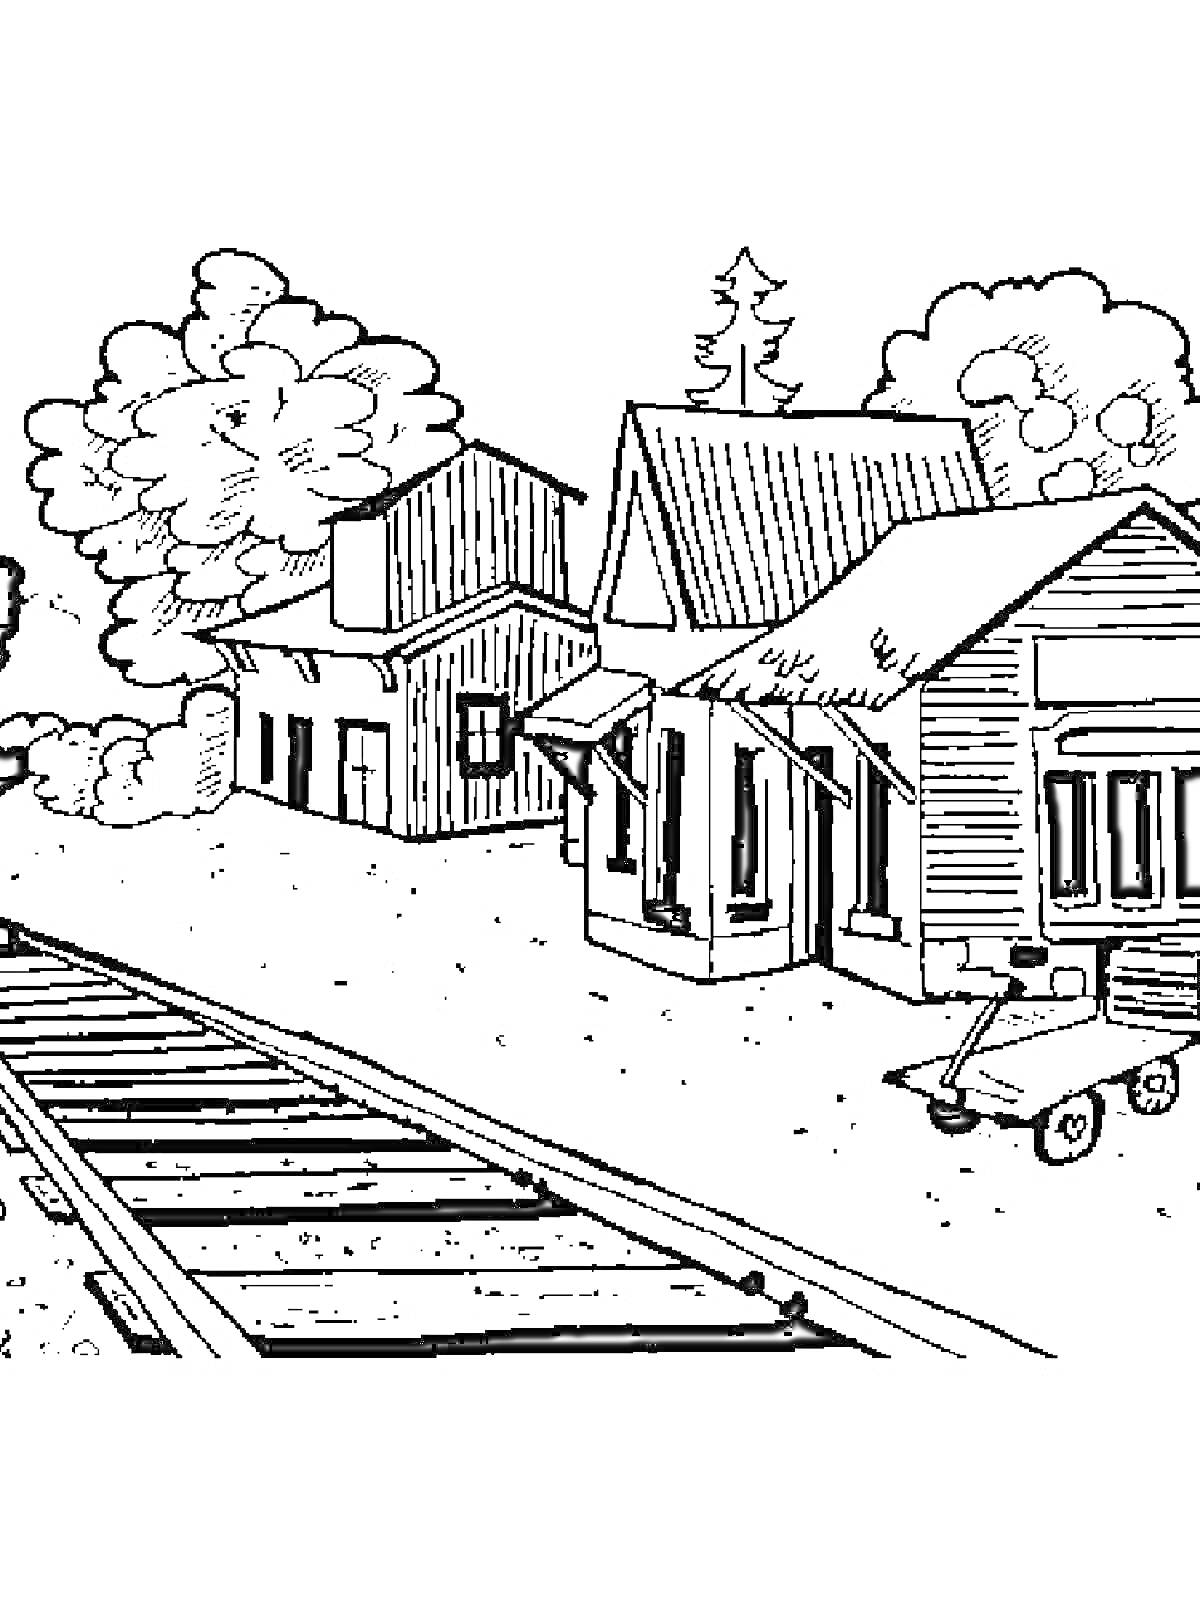 Железнодорожная станция с поездом, зданиями и тележкой